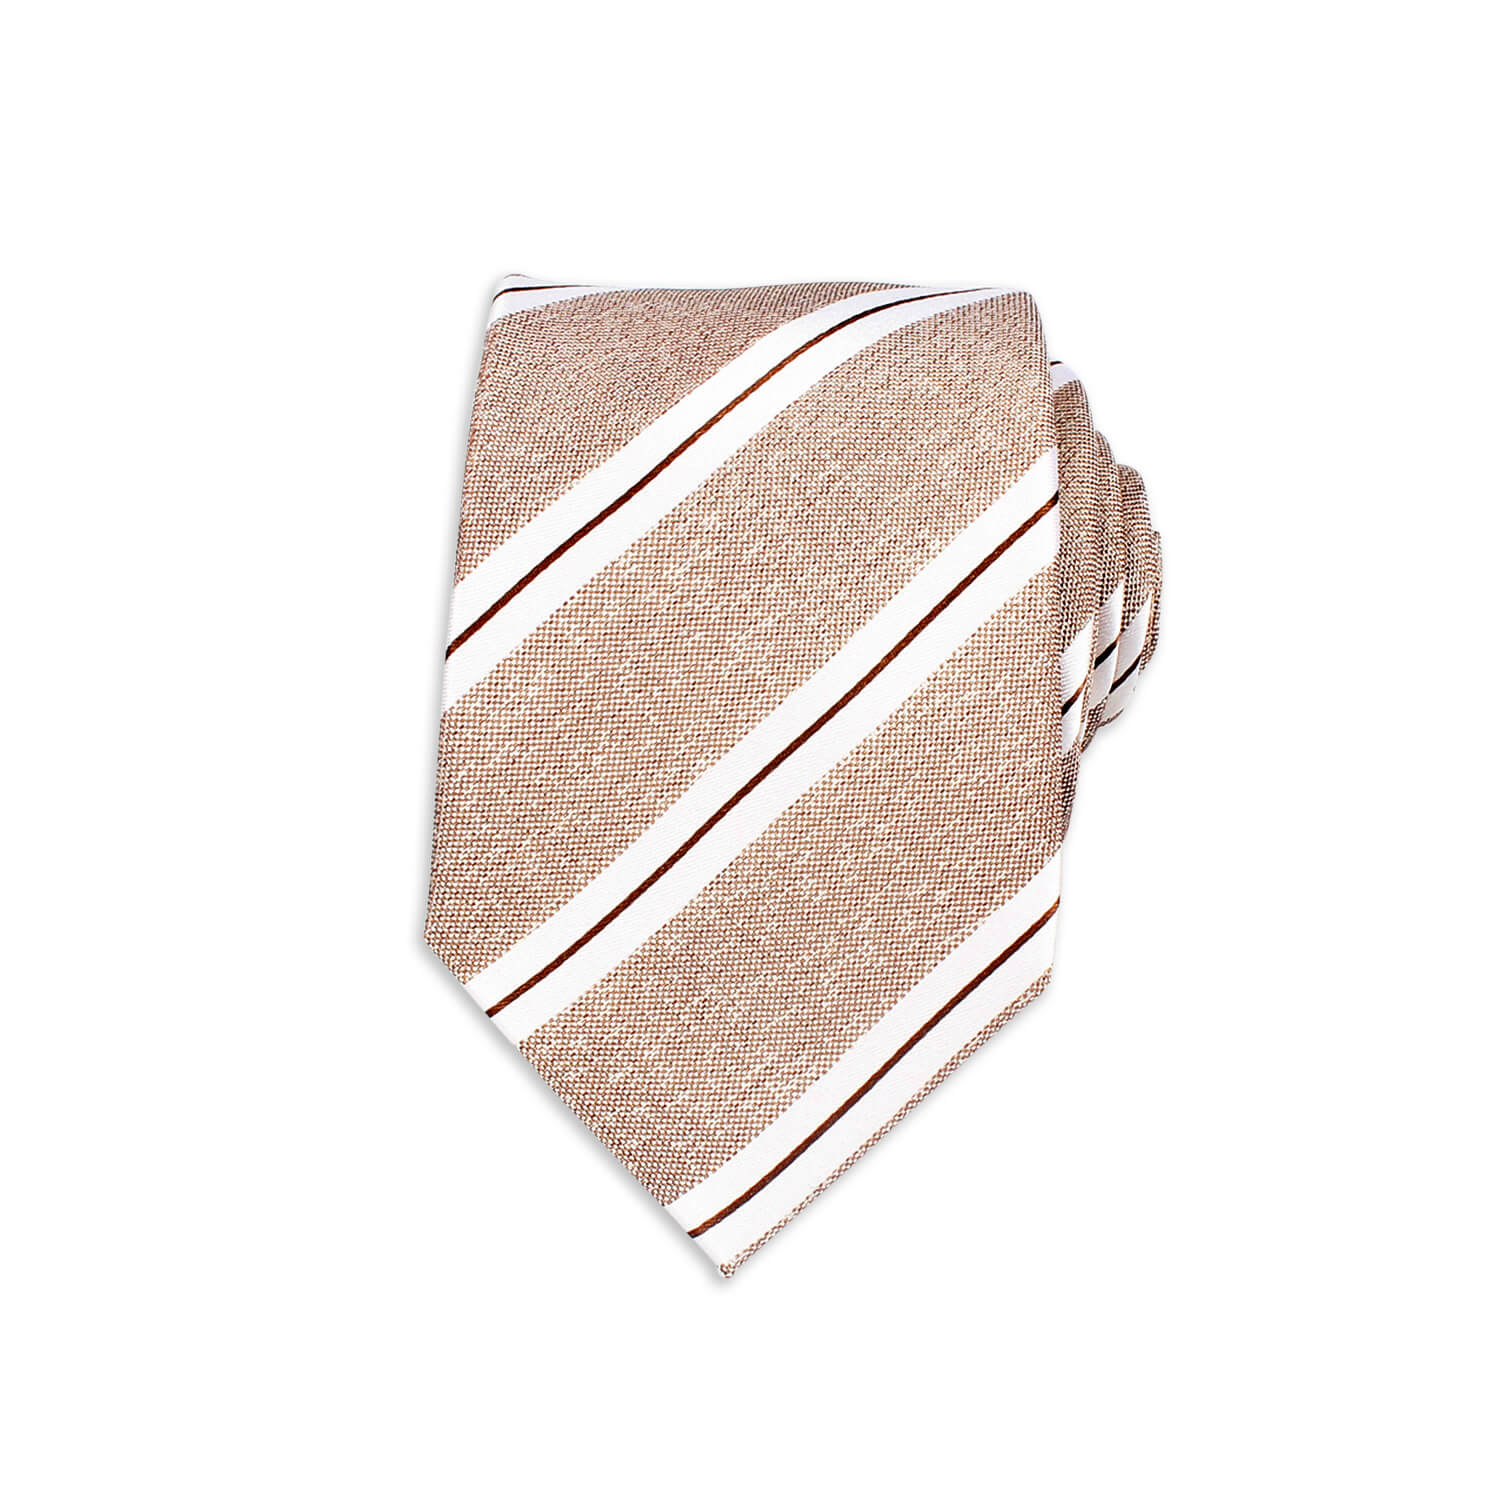 Formal Silk Tie, Brown